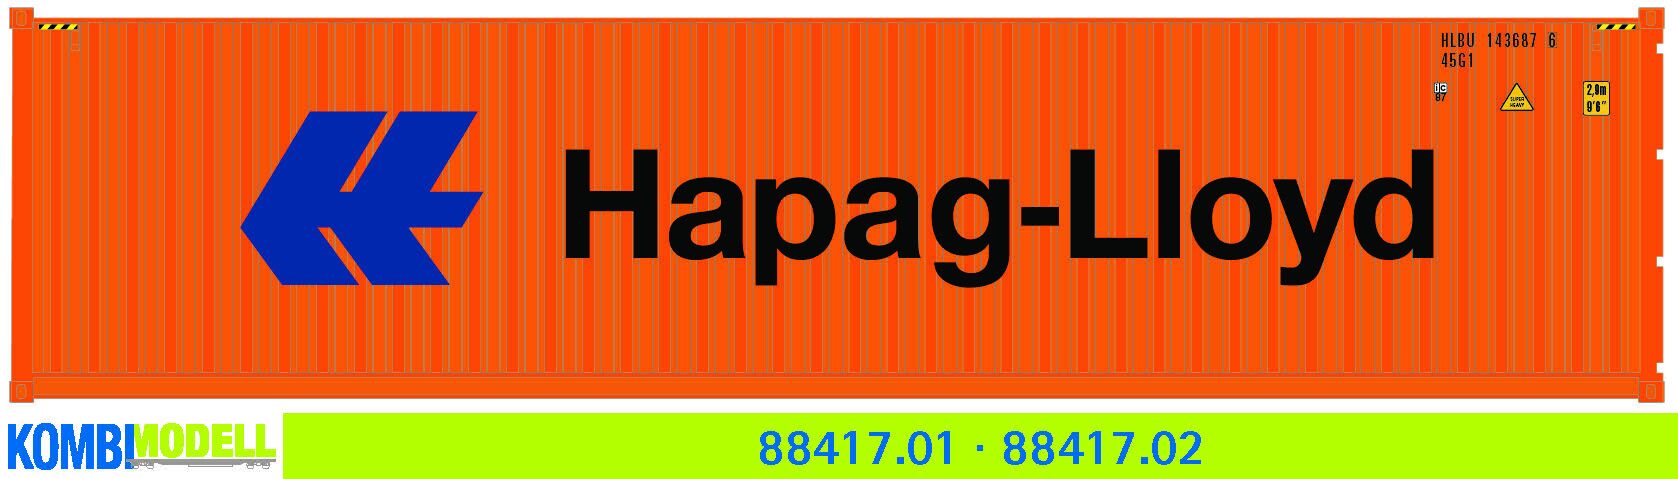 Kombimodell 88417.02 Ct 40' (45G1) »Hapag-Lloyd« ═ SoSe 